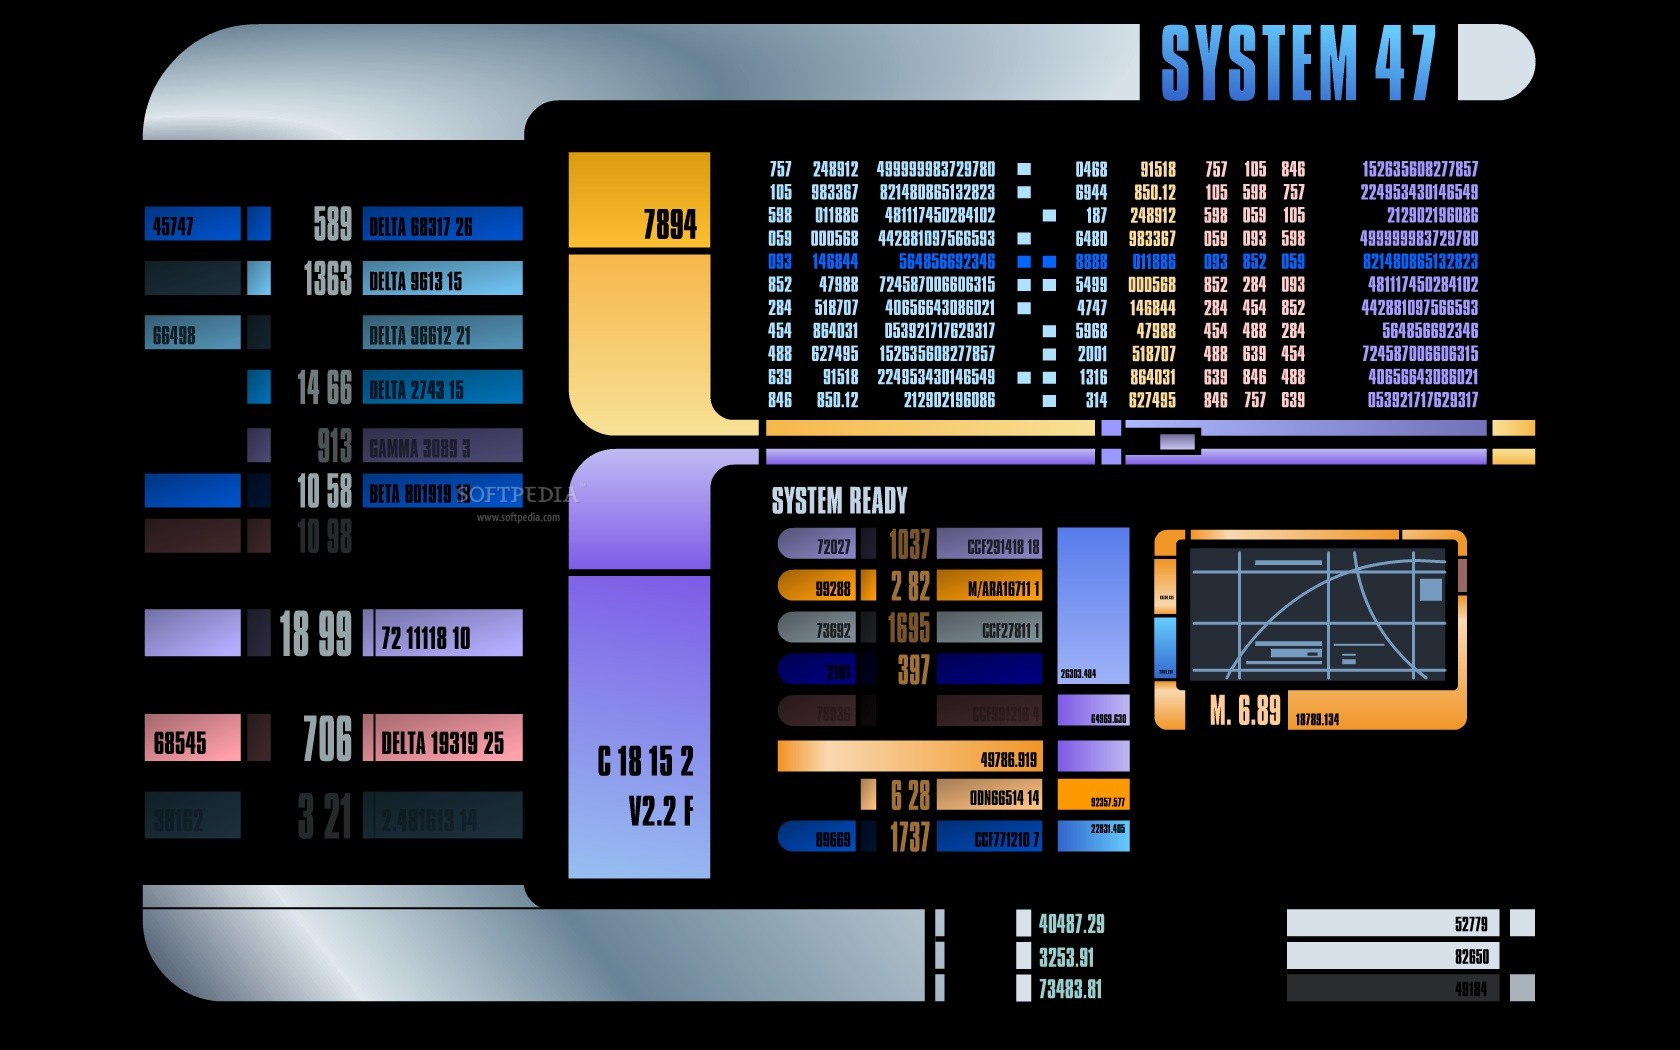 Star Trek Desktop Backgrounds